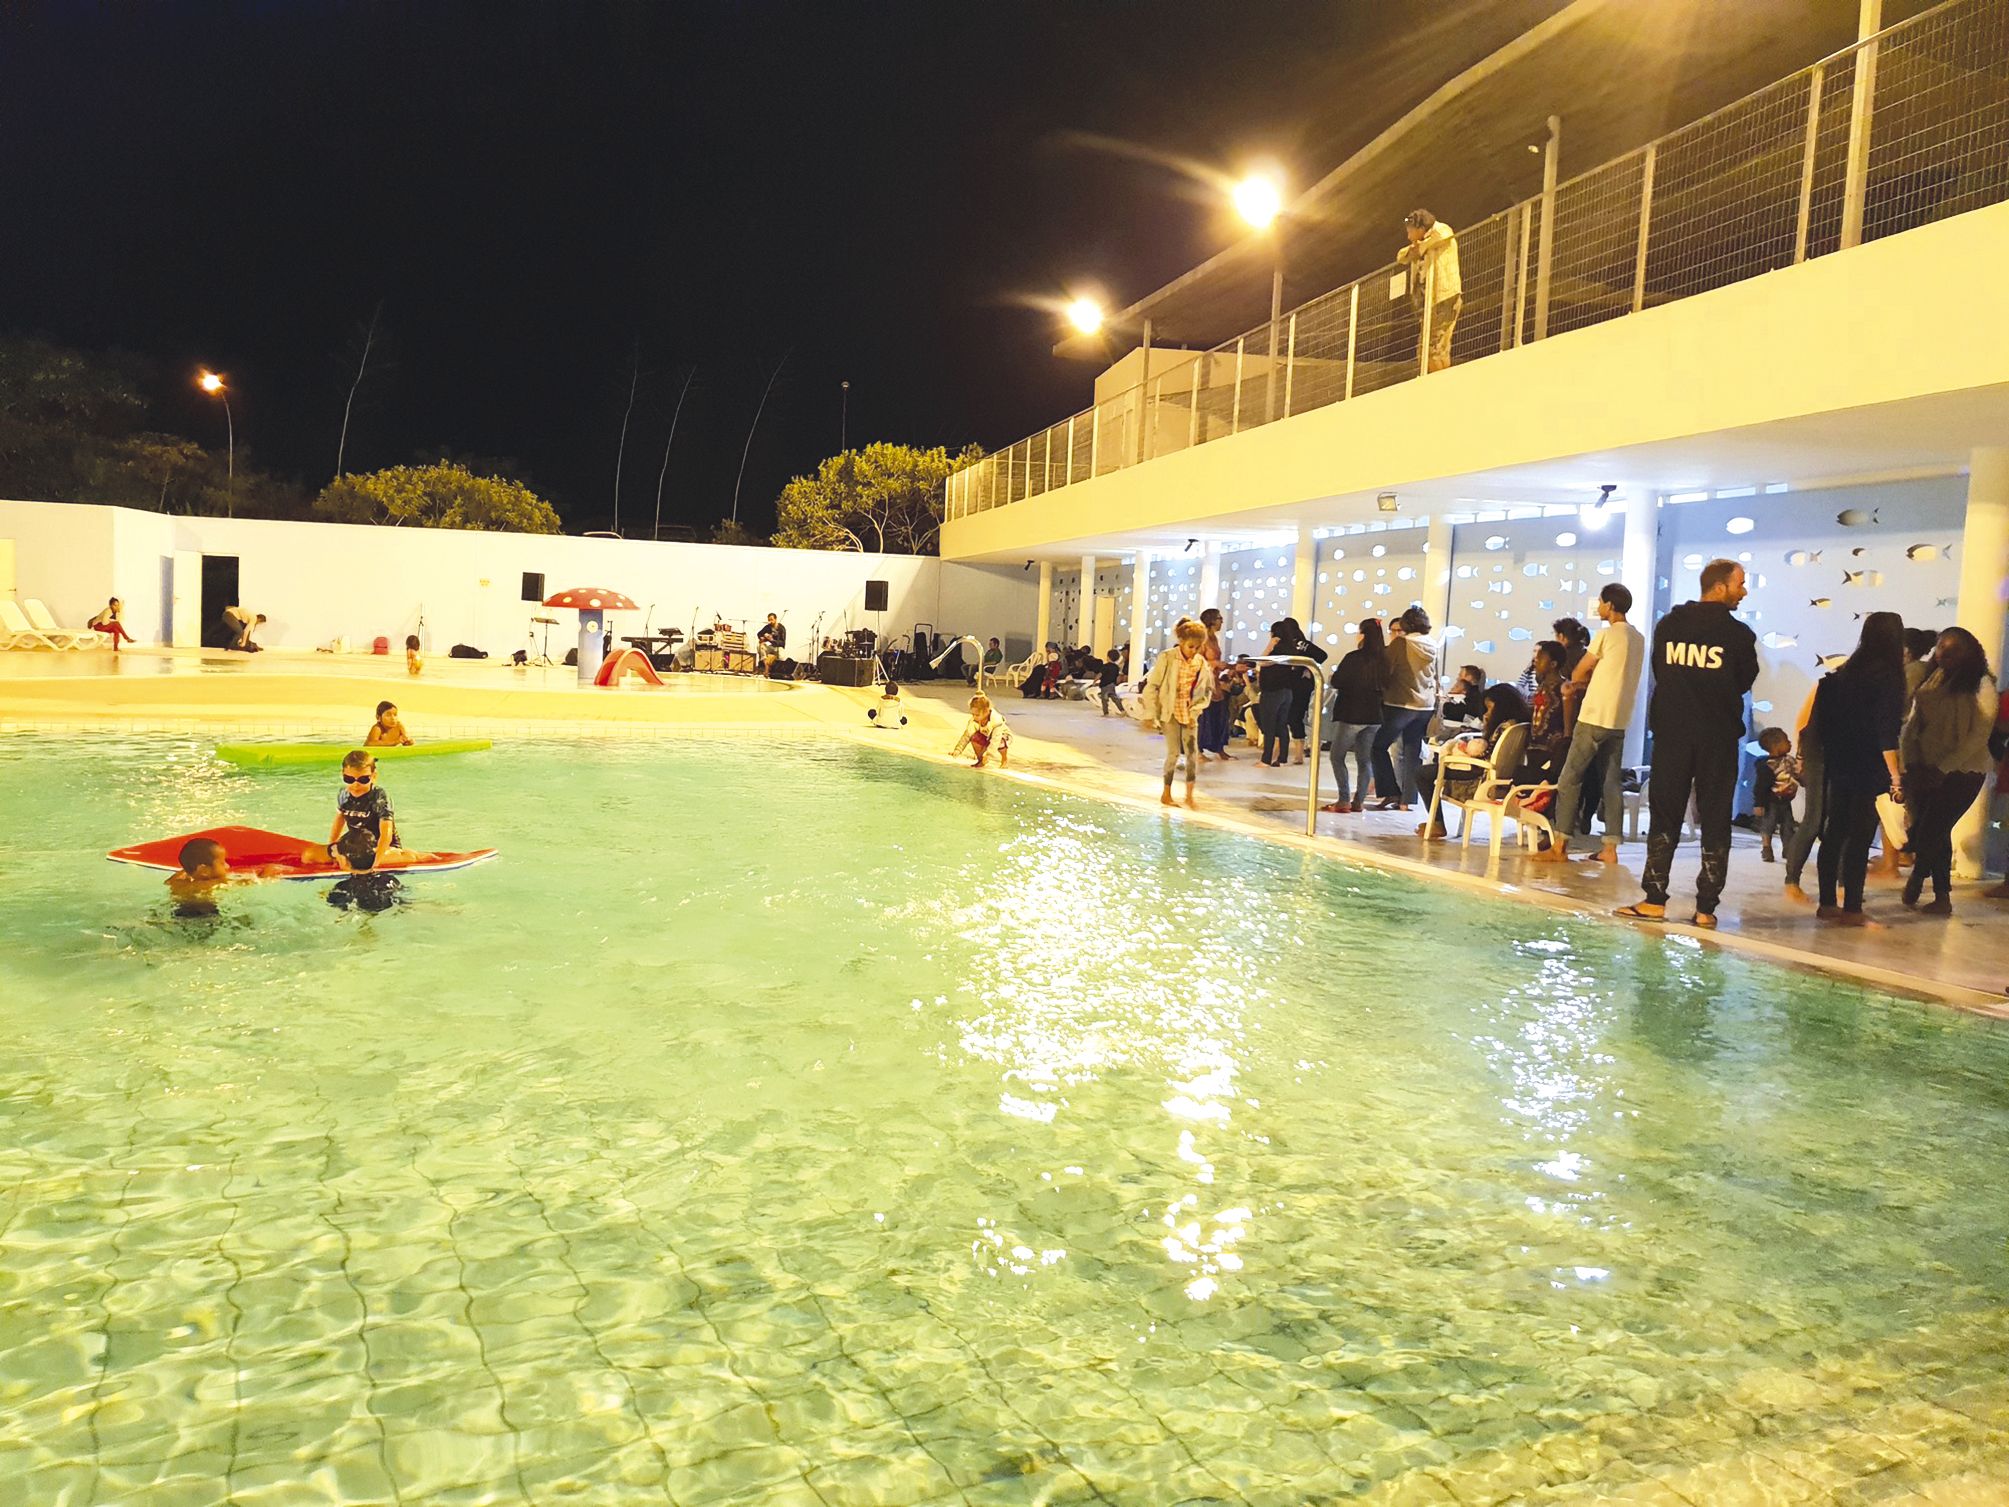 Installé au bord ou dans le bassin, le public a largement répondu présent afin d’écouter les groupes et les artistes venus participer à la fête de la Musique, organisée par le centre aquatique provincial. Le collectif de Vook, les groupes Nawéèlé et Kamad